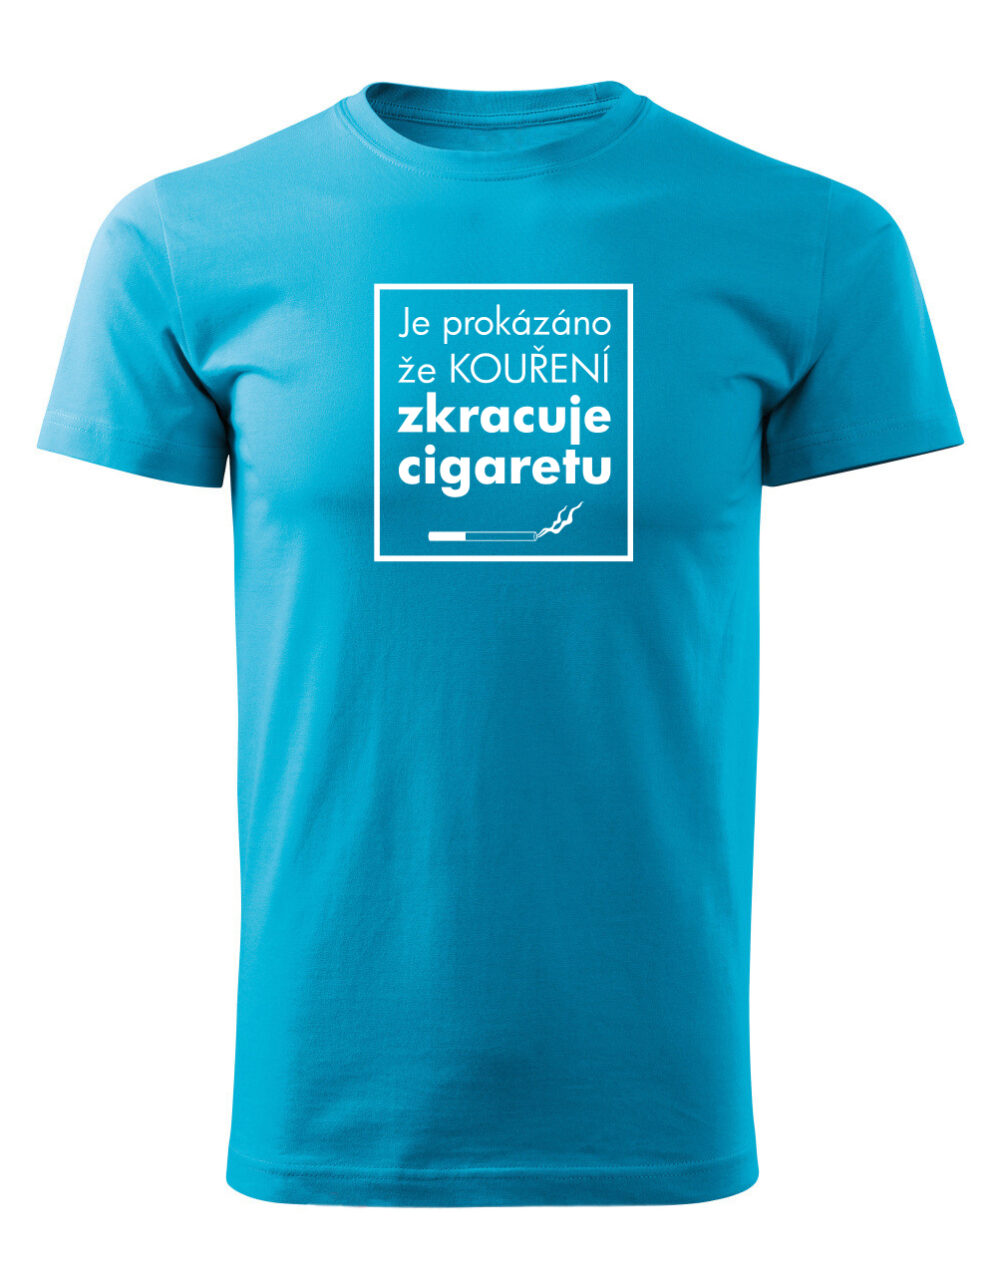 Pánské tričko s potiskem Kouření zkracuje cigaretu tyrkysová